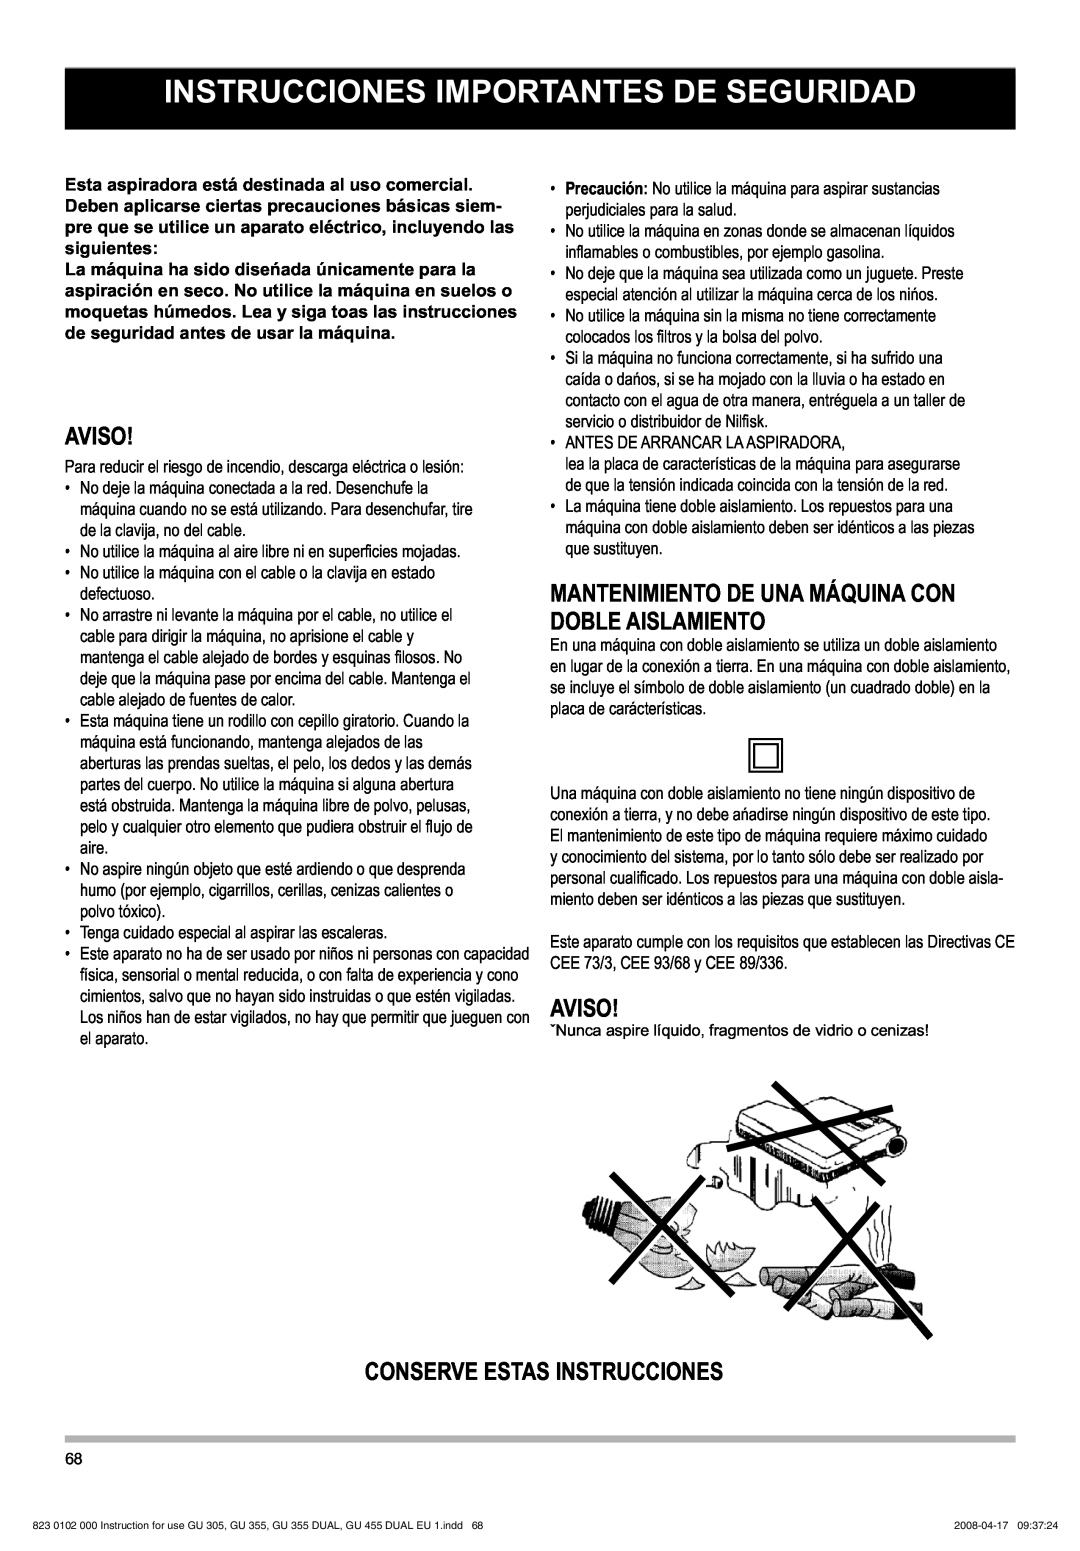 Nilfisk-Advance America GU 15 DMU, GU 305 manual Instrucciones Importantes De Seguridad, Aviso, Conserve Estas Instrucciones 